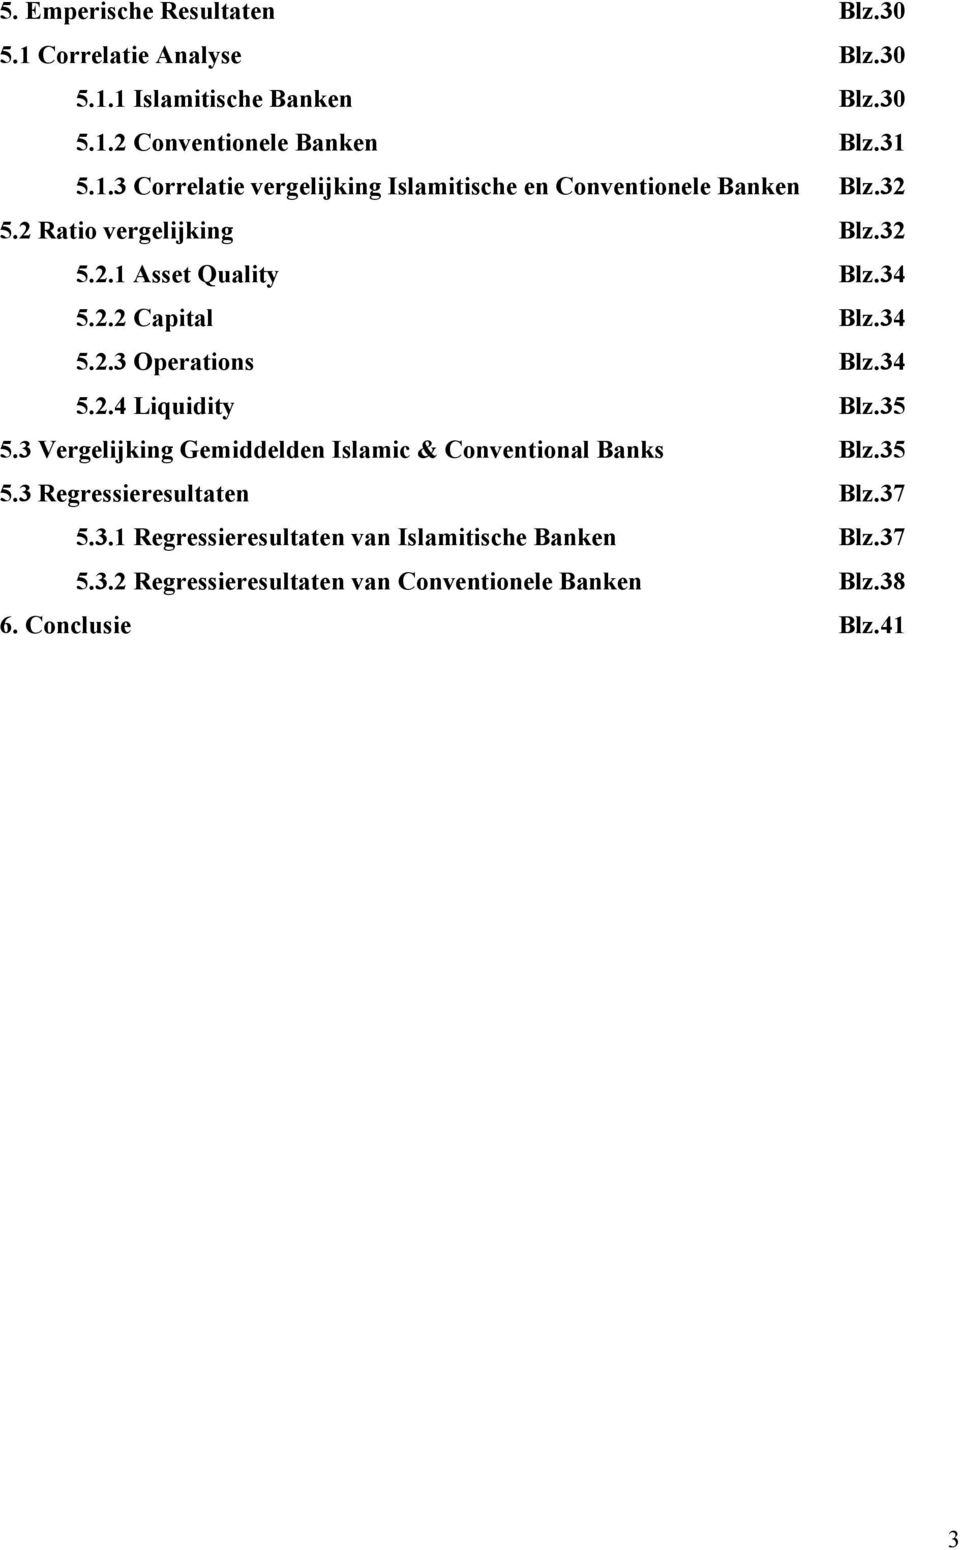 3 Vergelijking Gemiddelden Islamic & Conventional Banks Blz.35 5.3 Regressieresultaten Blz.37 5.3.1 Regressieresultaten van Islamitische Banken Blz.